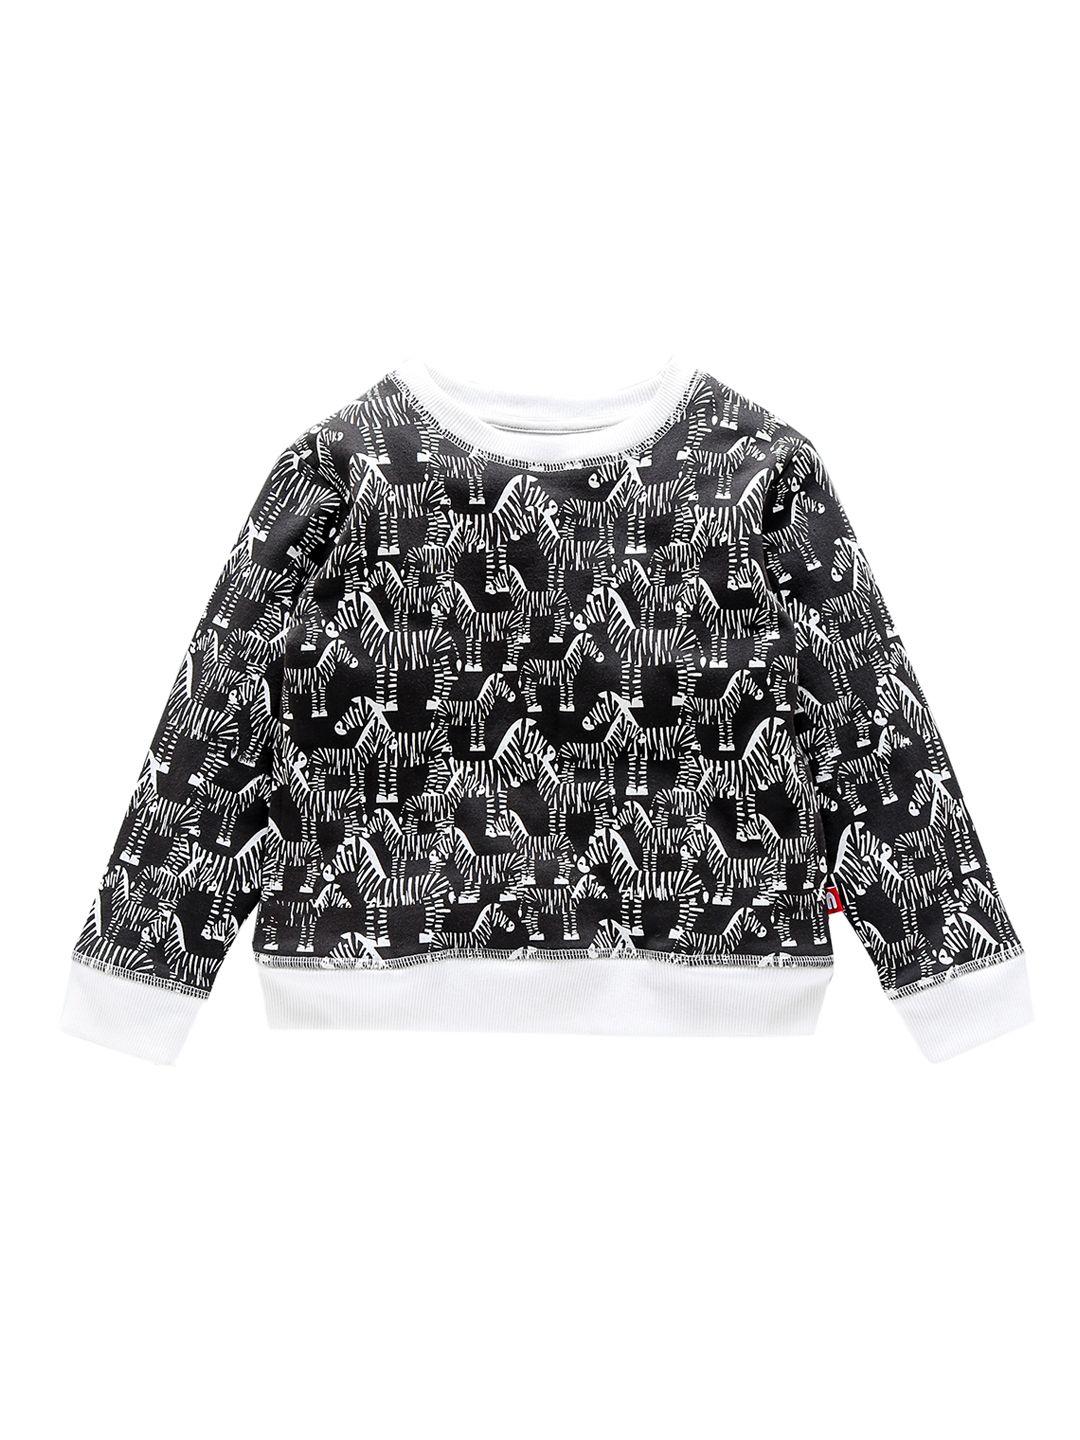 nino bambino boys organic cotton black & white printed sweatshirt